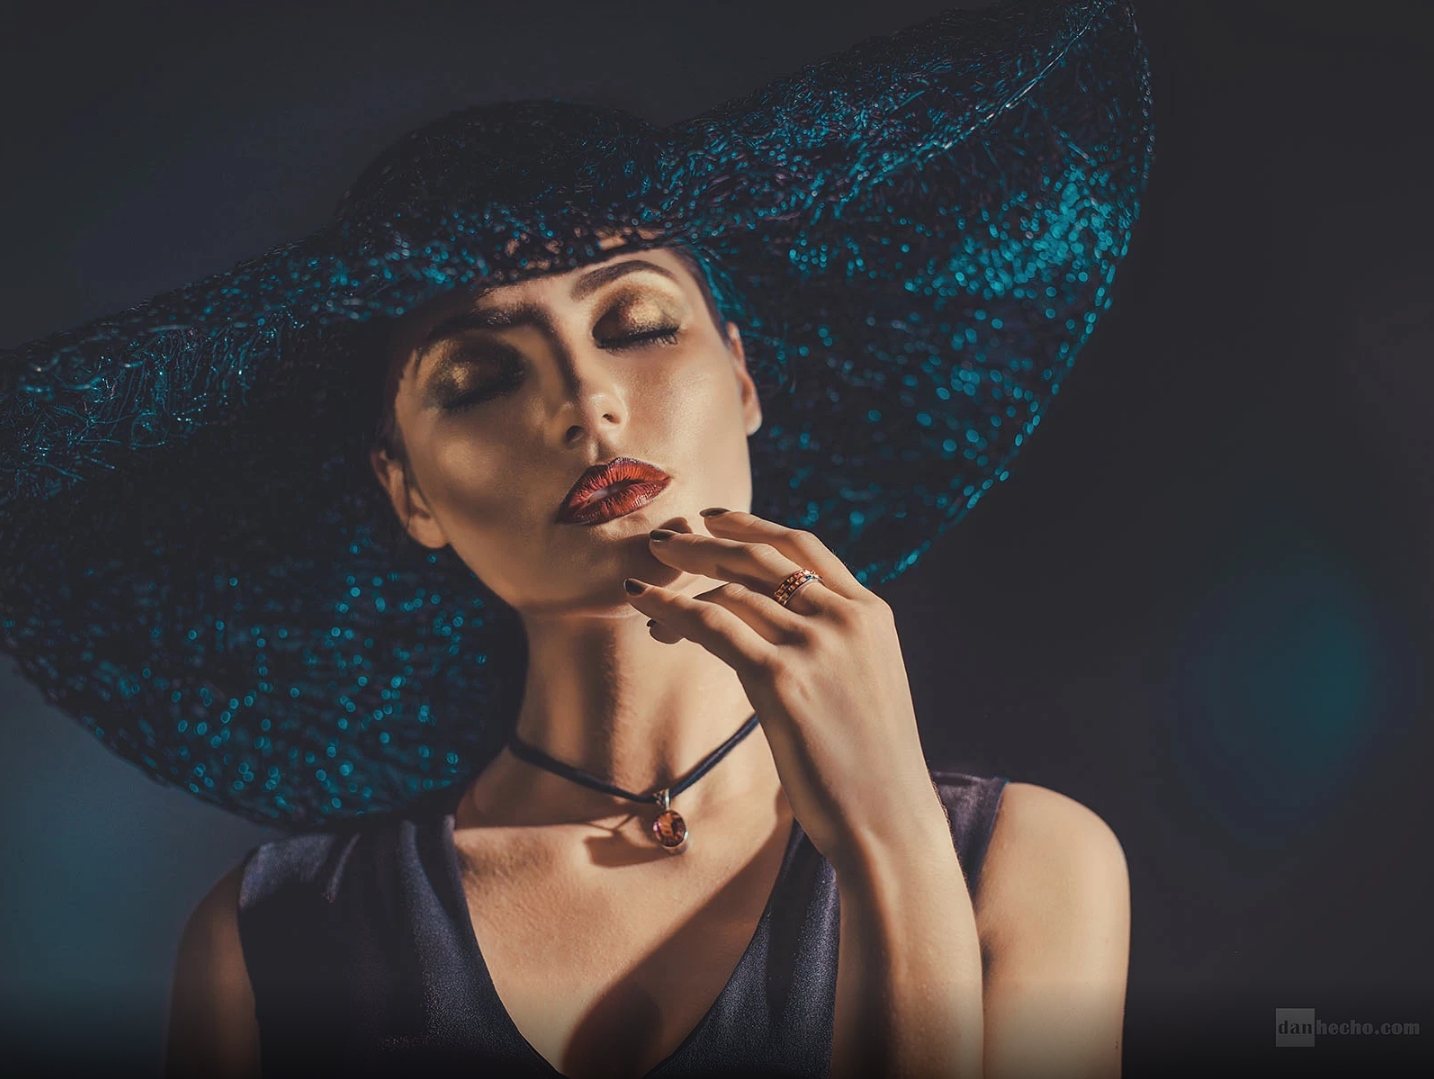 Blue Dark Hat Necklace Makeup Women Model Dan Hecho 500px 1434x1079